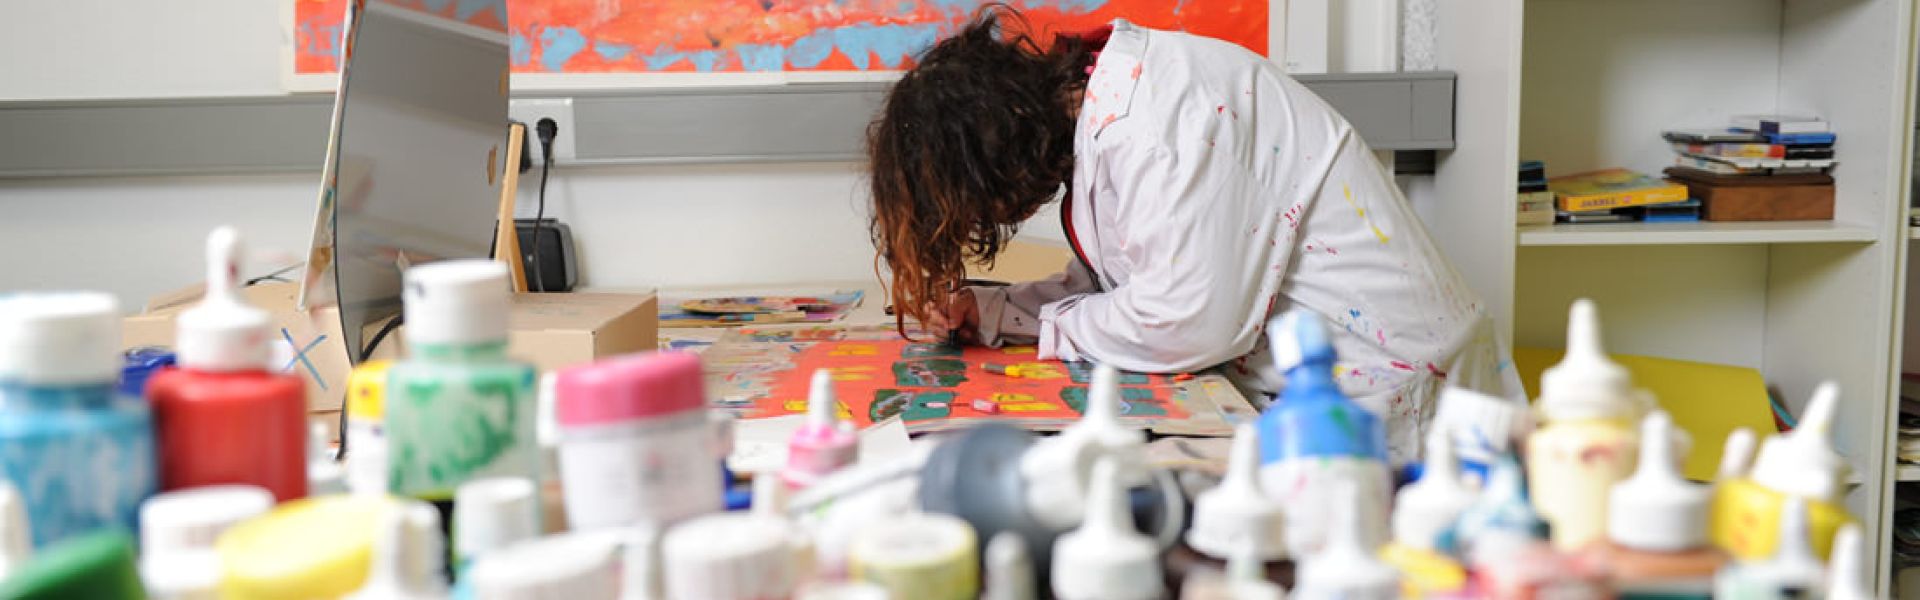 Frau beim Malen im Atelier Freistil der Elbe-Werkstätten